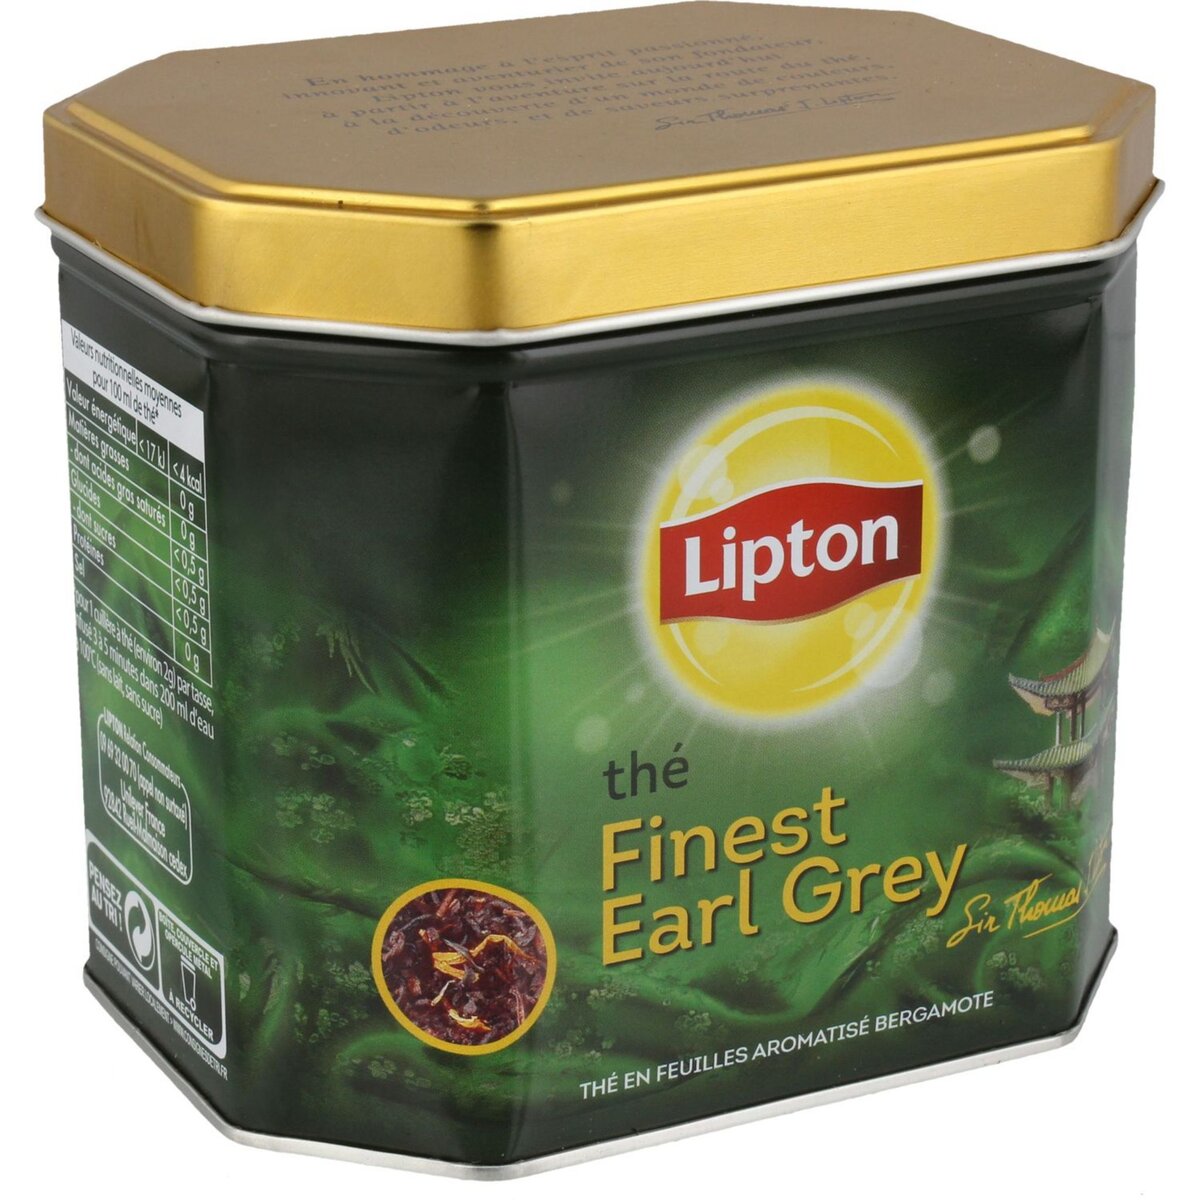 Coffret assortiment de thés parfumés Lipton x 60 sachets - Achat